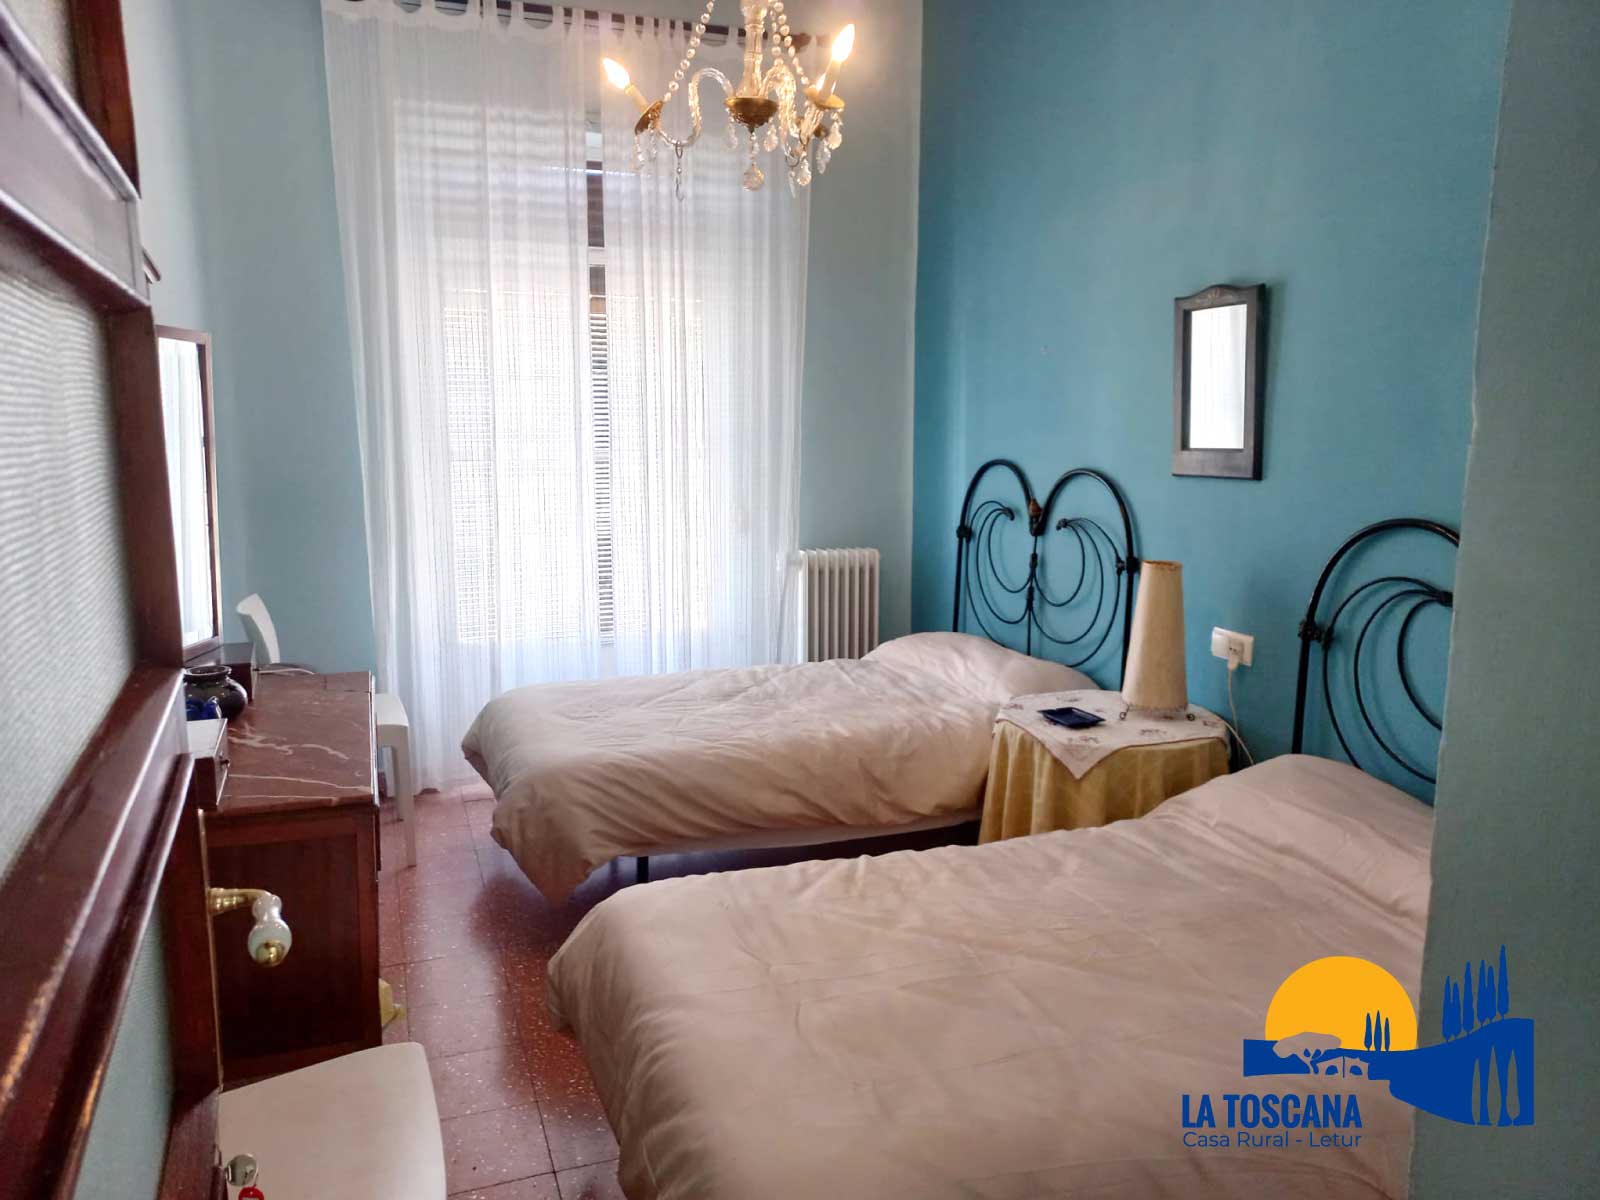 Habitación con dos camas individuales - La Toscana de Letur - Casa rural